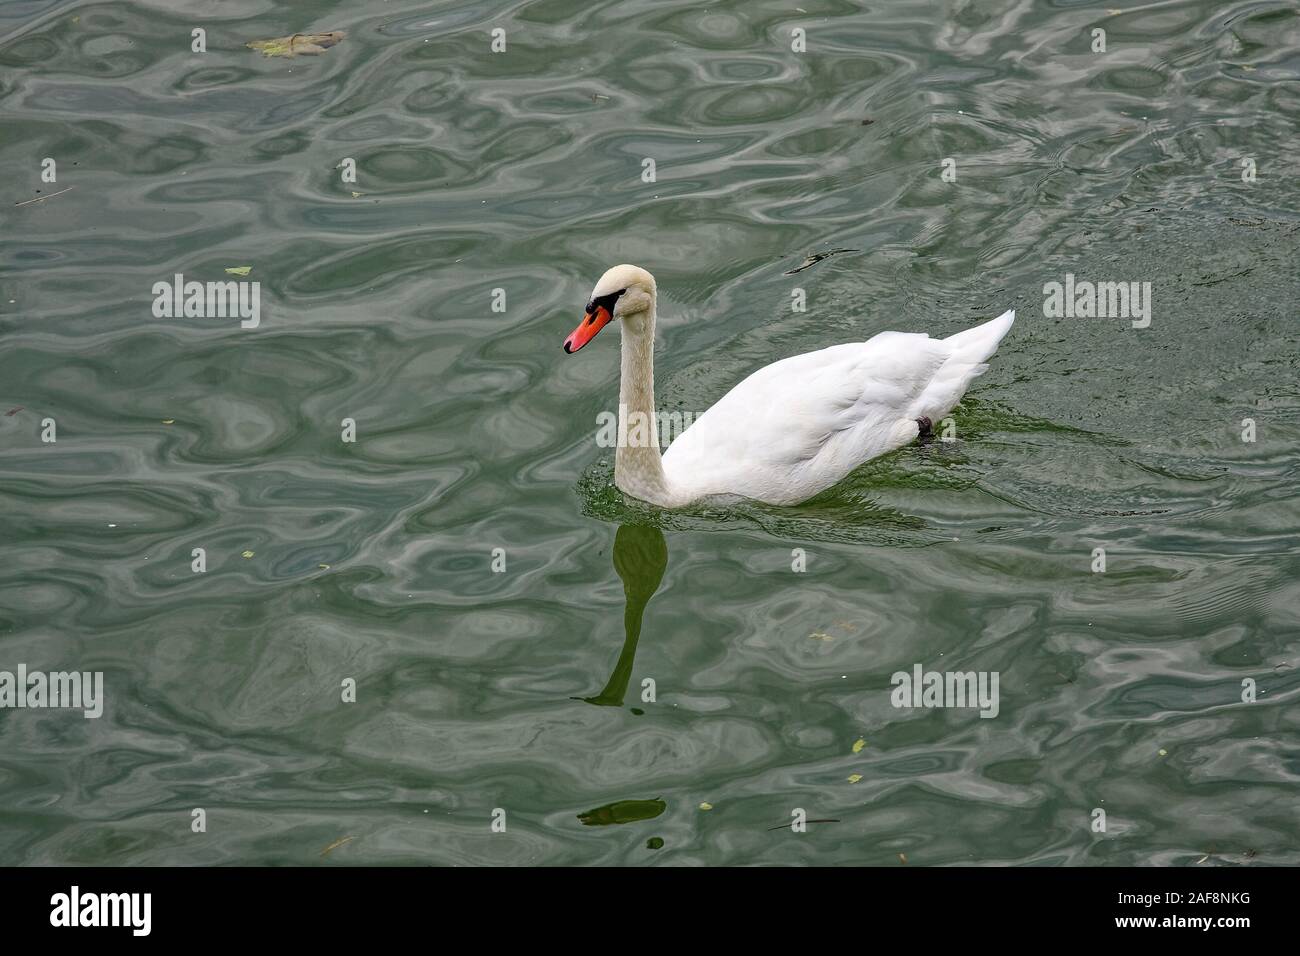 white swan swimming, orange beak, wildlife, large flying bird, genus Cygnus, graceful, long neck, animal, France, summer; horizontal Stock Photo